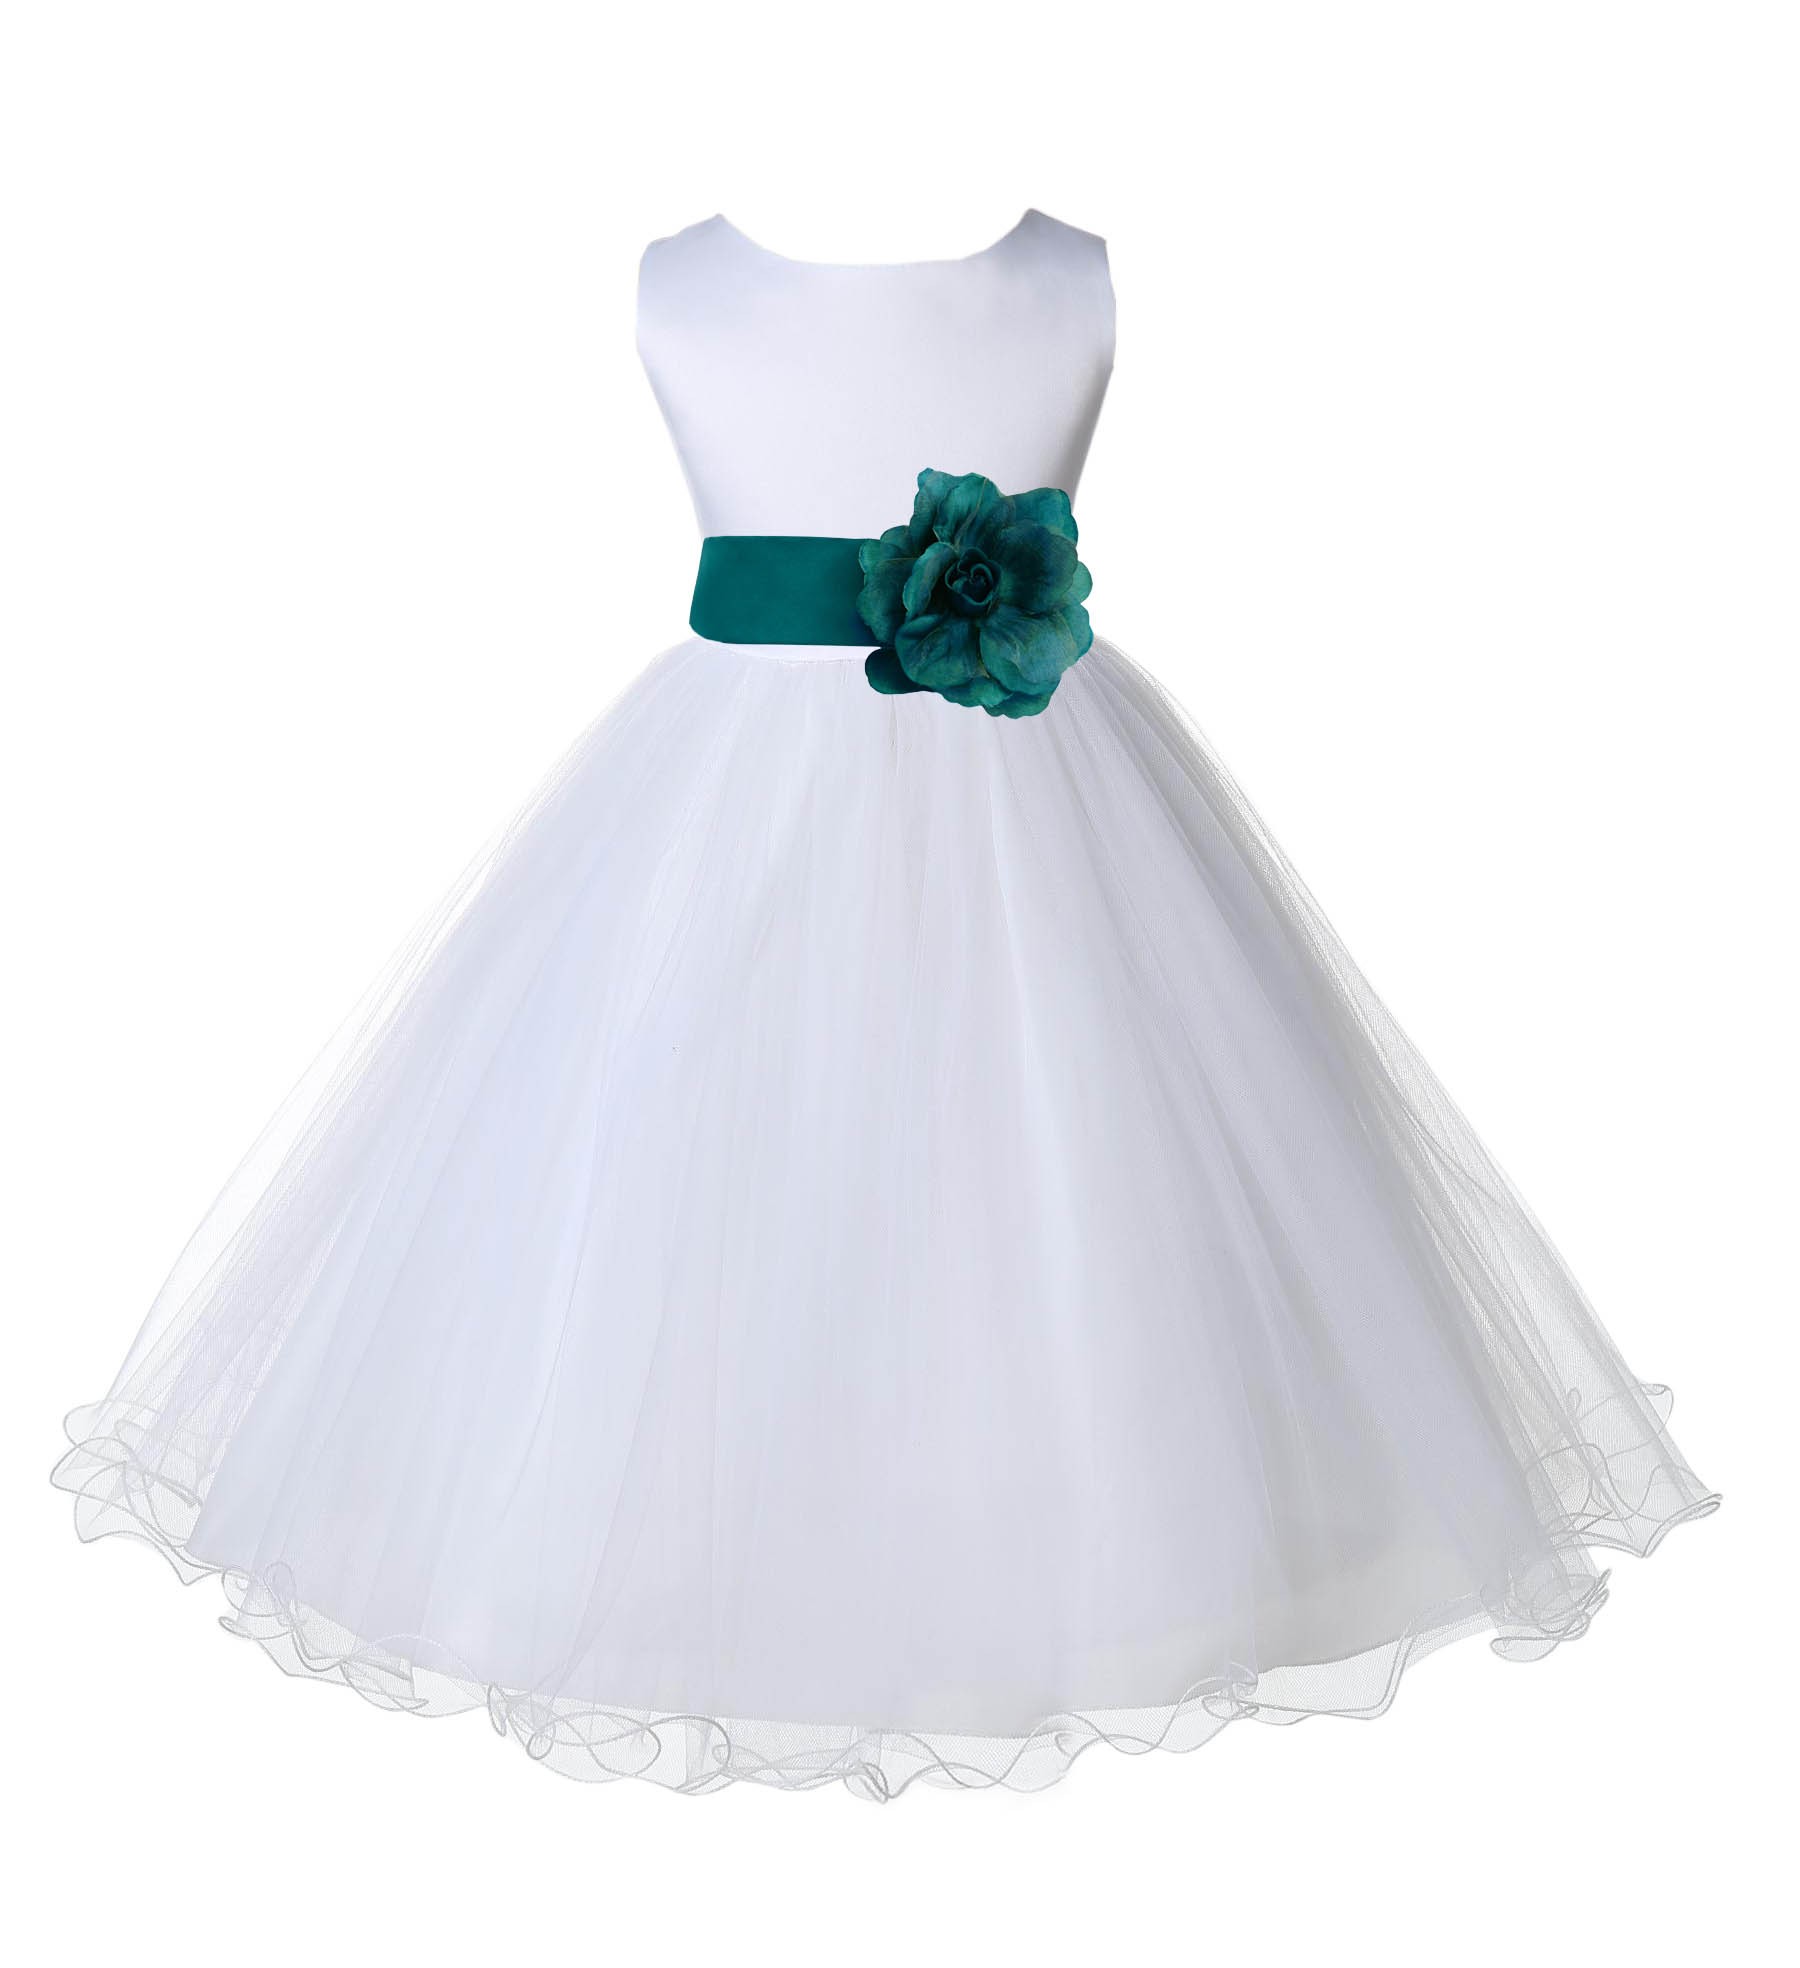 White/Oasis Tulle Rattail Edge Flower Girl Dress Wedding Bridal 829S